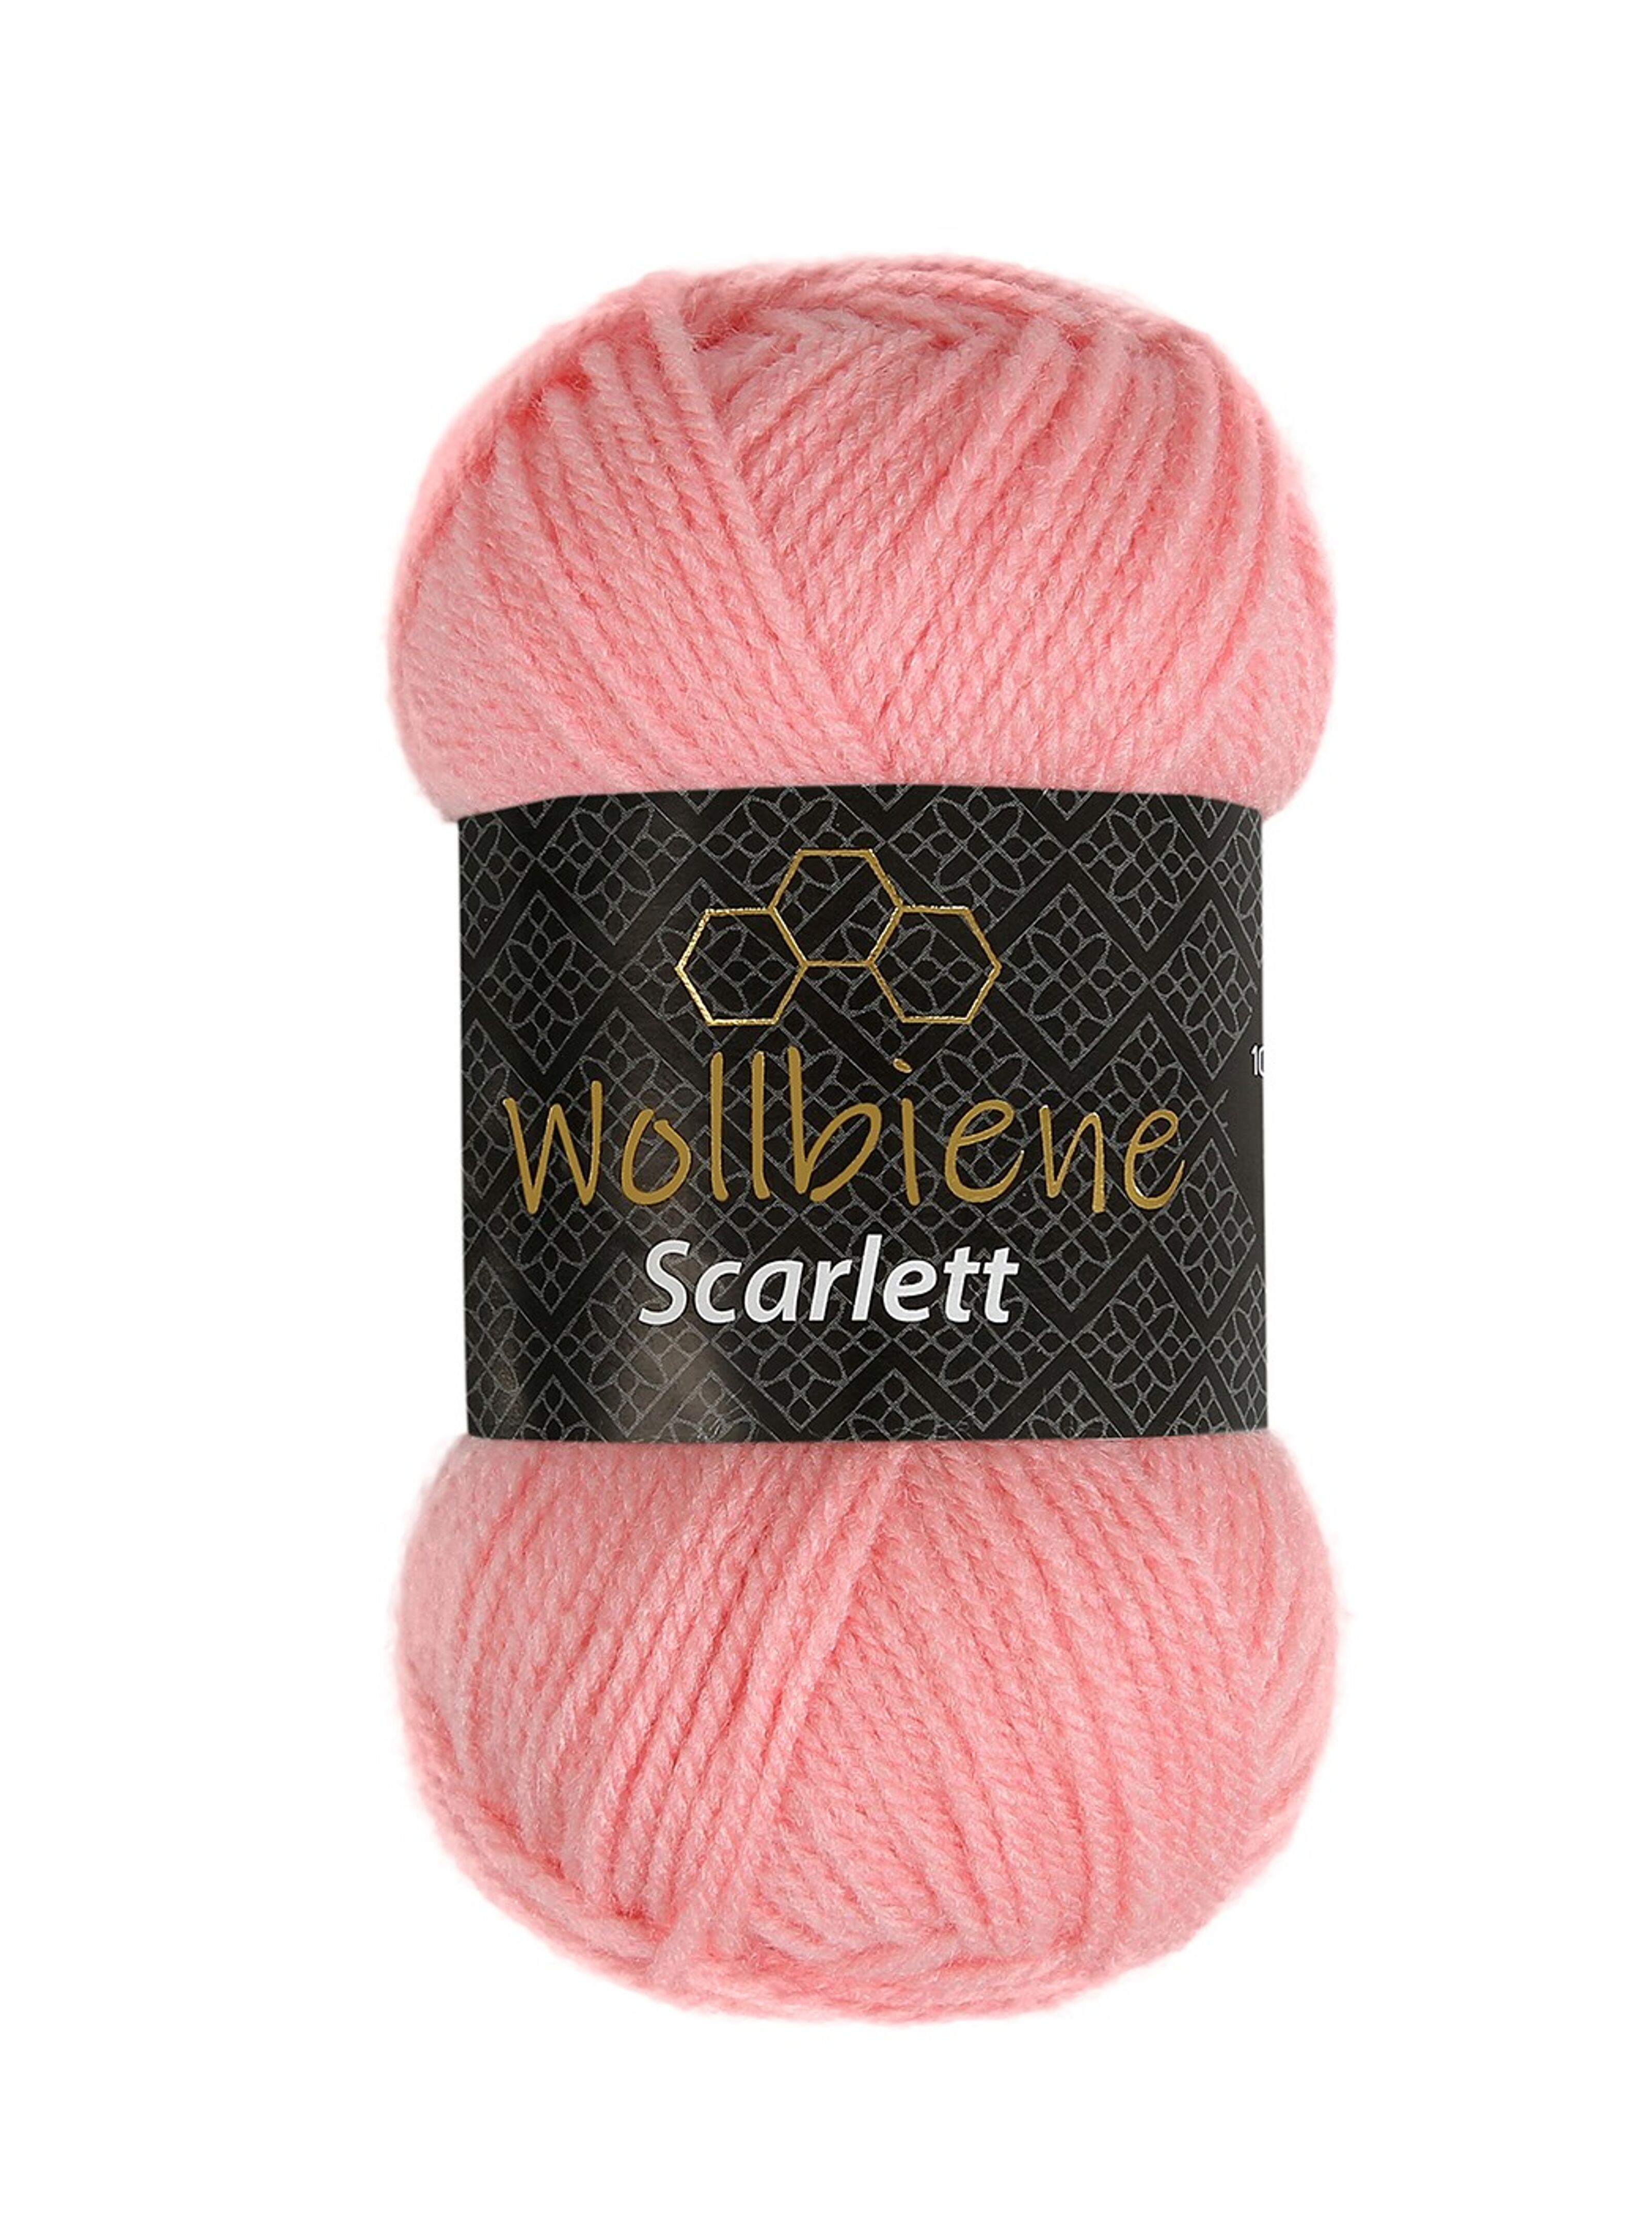 Achat Wollbiene Scarlett 09 laine à tricoter 50 gr laine crochet  polyacrylique laine Uni en gros